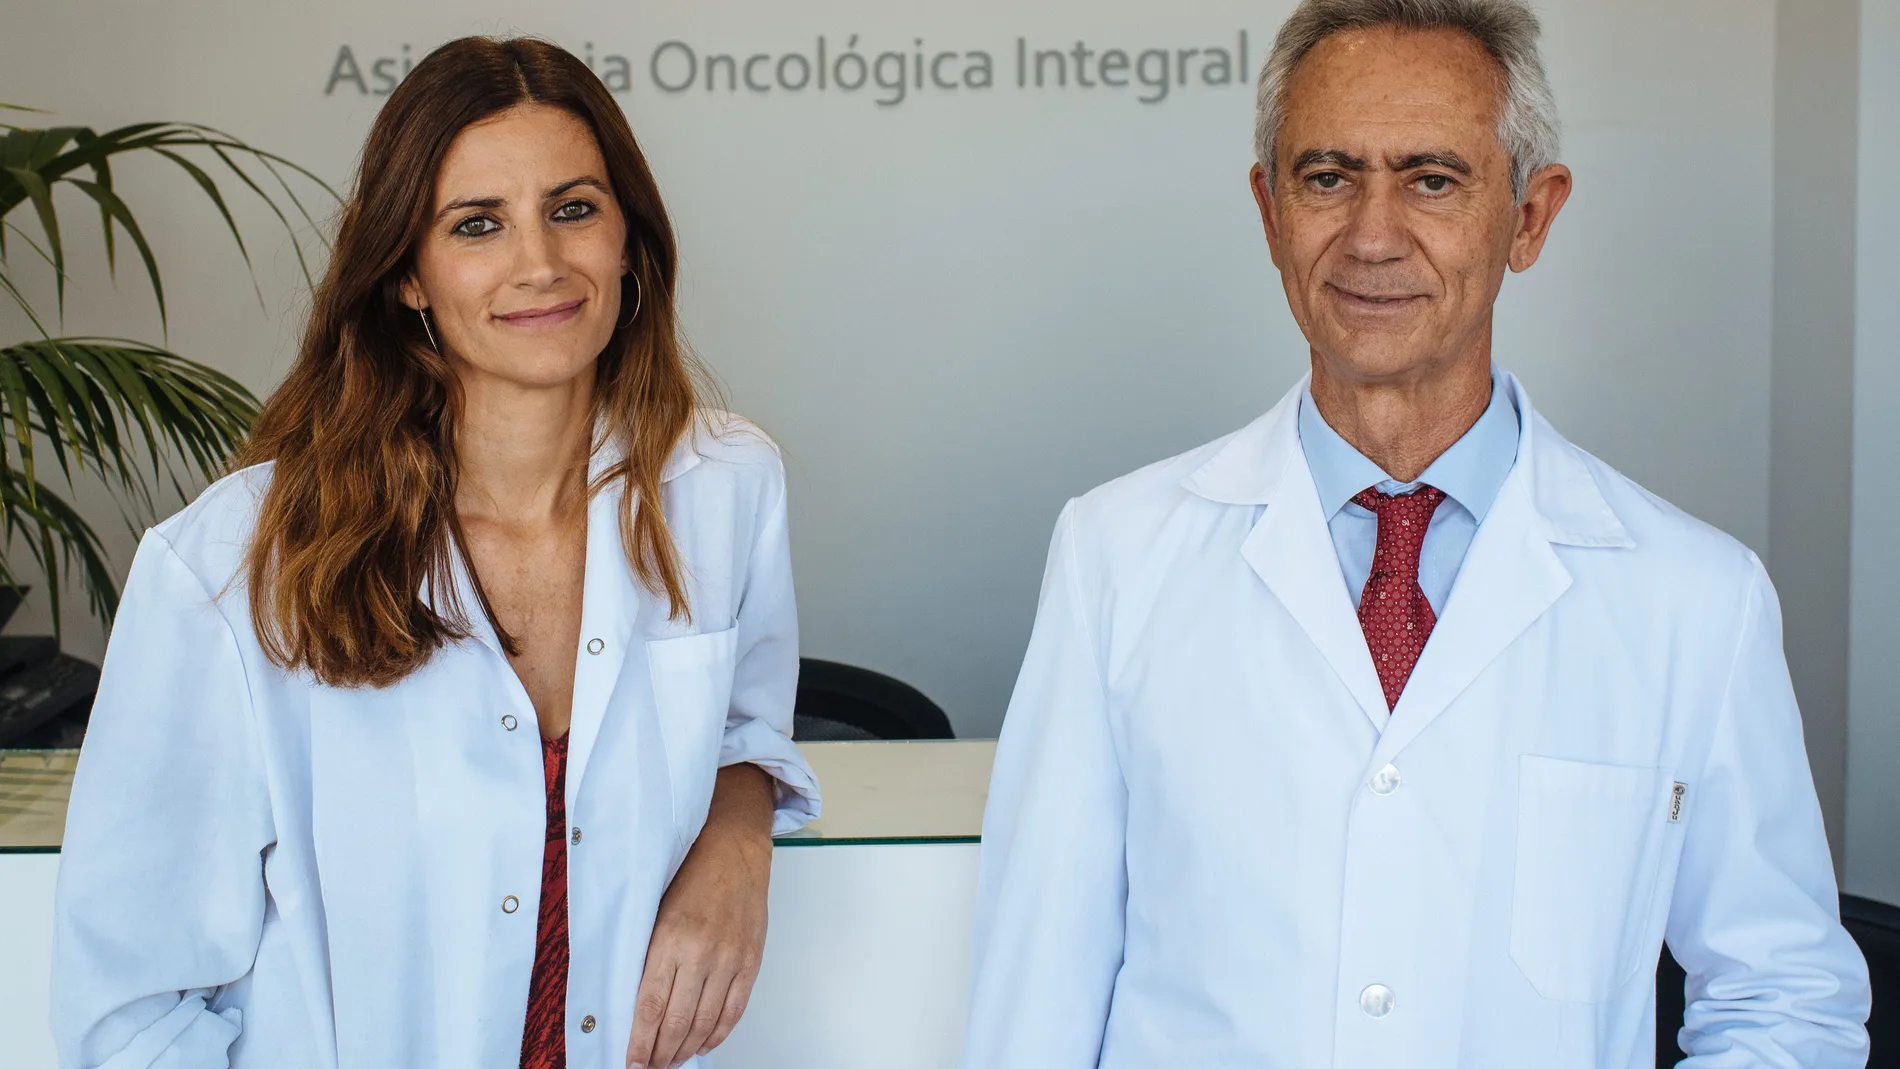 Los oncólogos María Valero y Pedro Valero